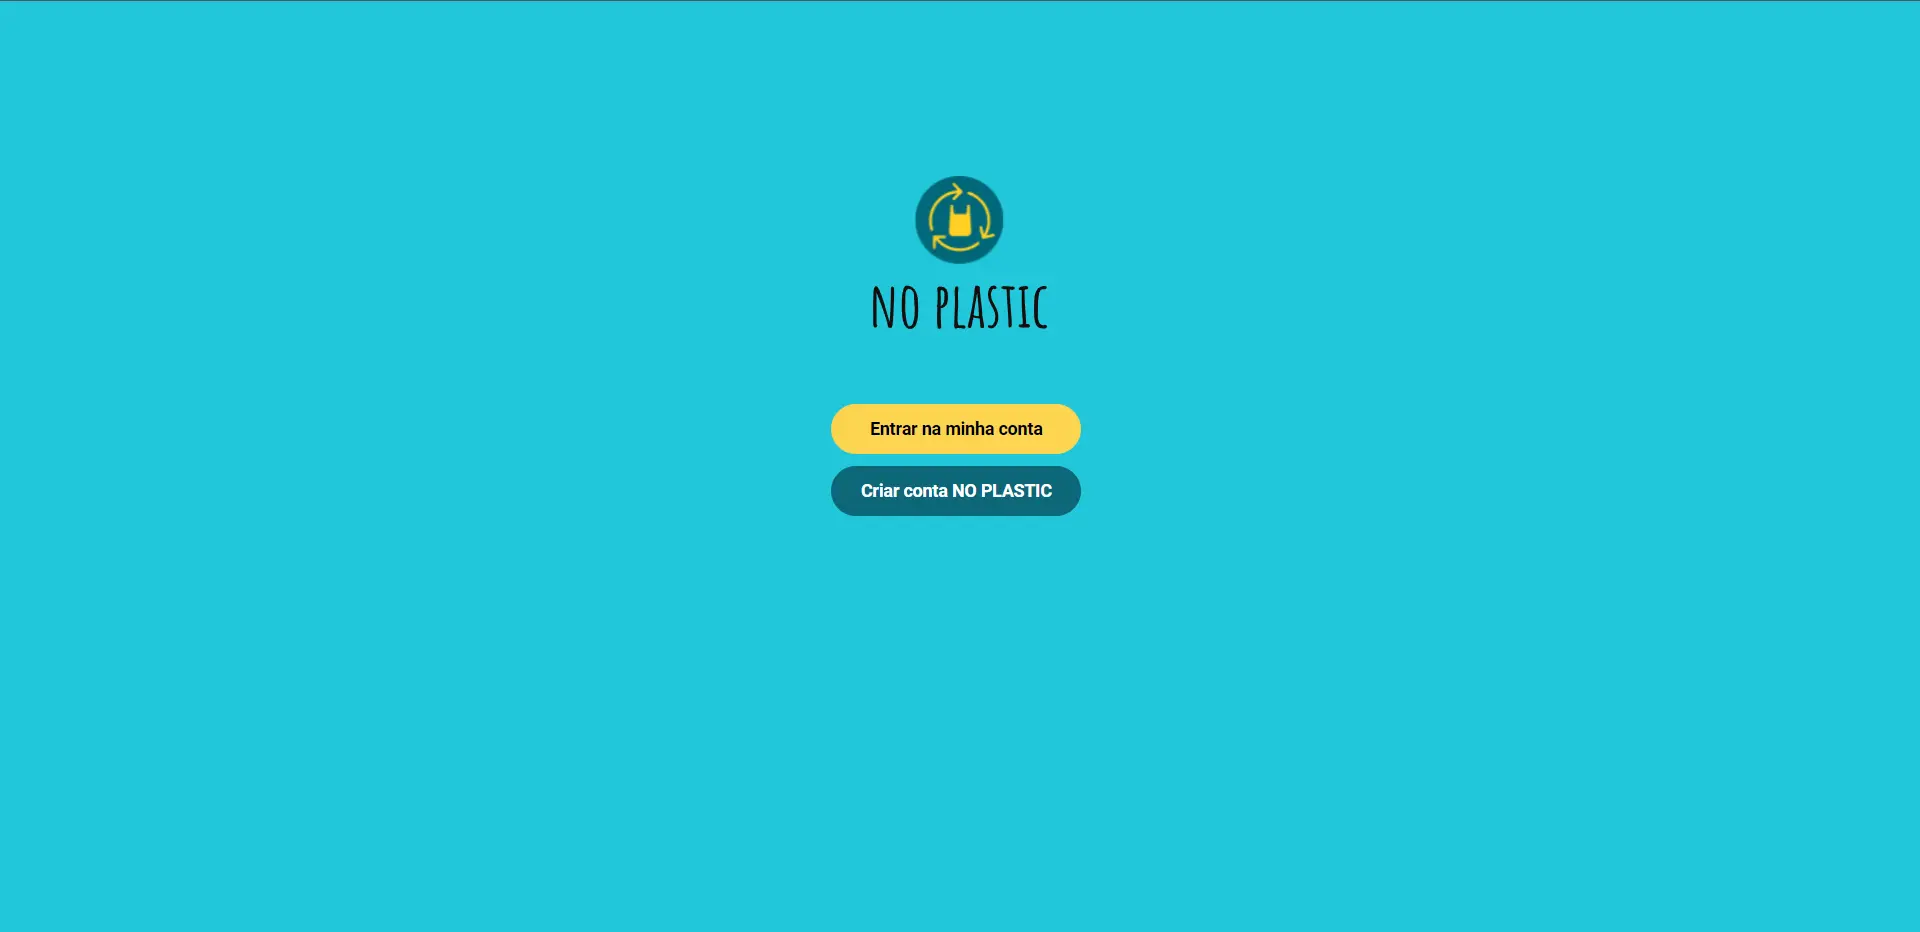 noplastic: projeto de cashback para quem utiliza sacolas de tecido